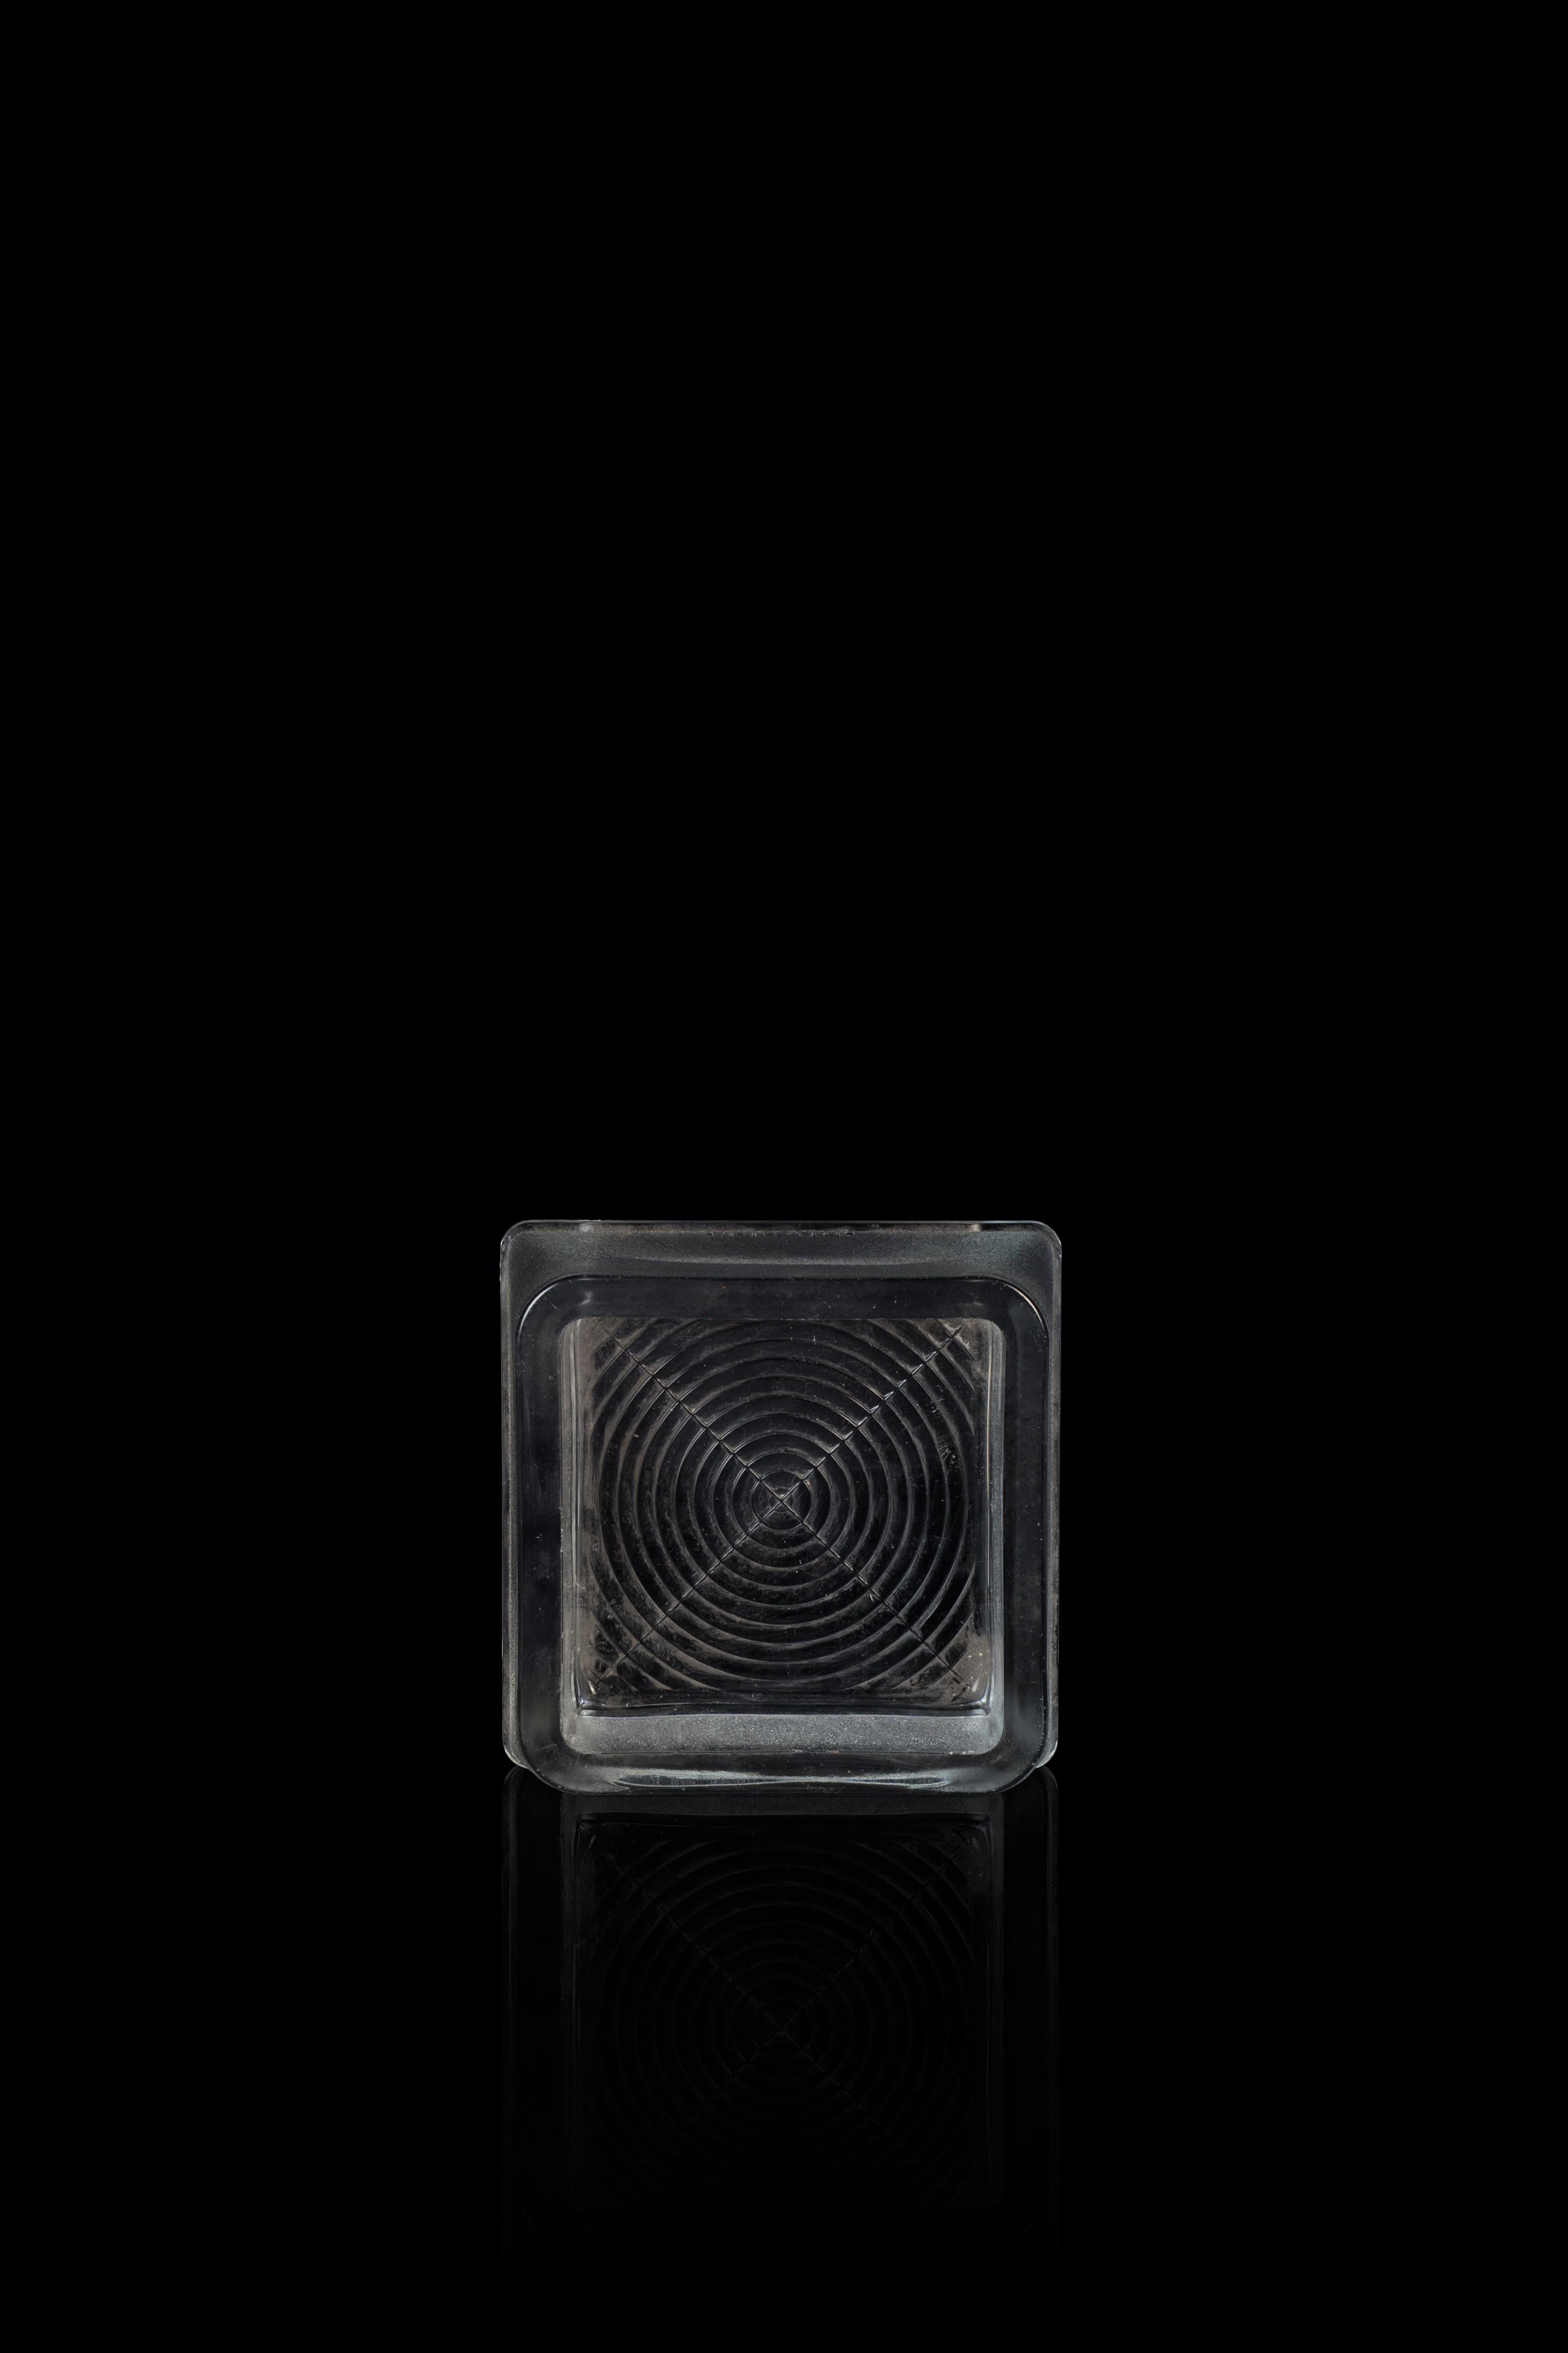 Le cendrier en verre Fidenza est un merveilleux objet décoratif en verre, réalisé dans les années 1960. 

Cendrier en verre très à la mode réalisé par Fidenza, Italie.

Verre opaque et décoration géométrique sur la base. Fabriqué en Italie dans